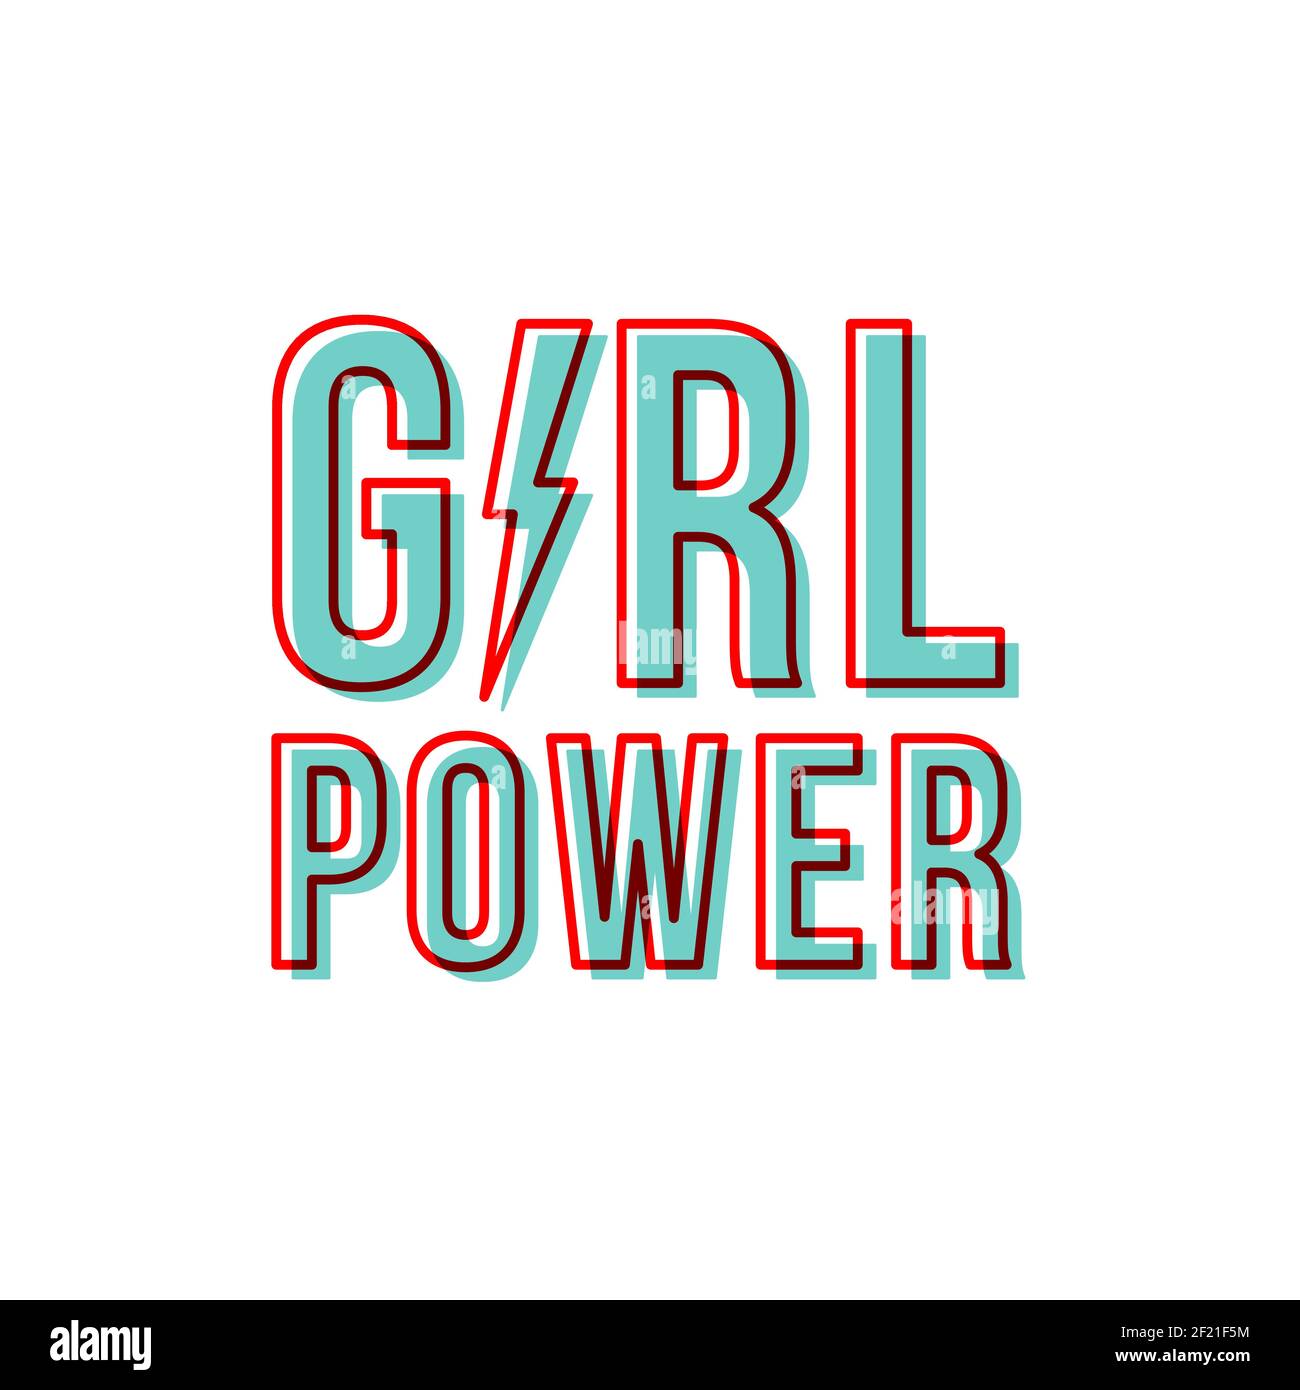 Girl Power mit Donnerkeil. Motivationstrainer. Feministisches Zitat. Roter Umriss. Rot und blau. Vektor-Illustration, flaches Design Stock Vektor